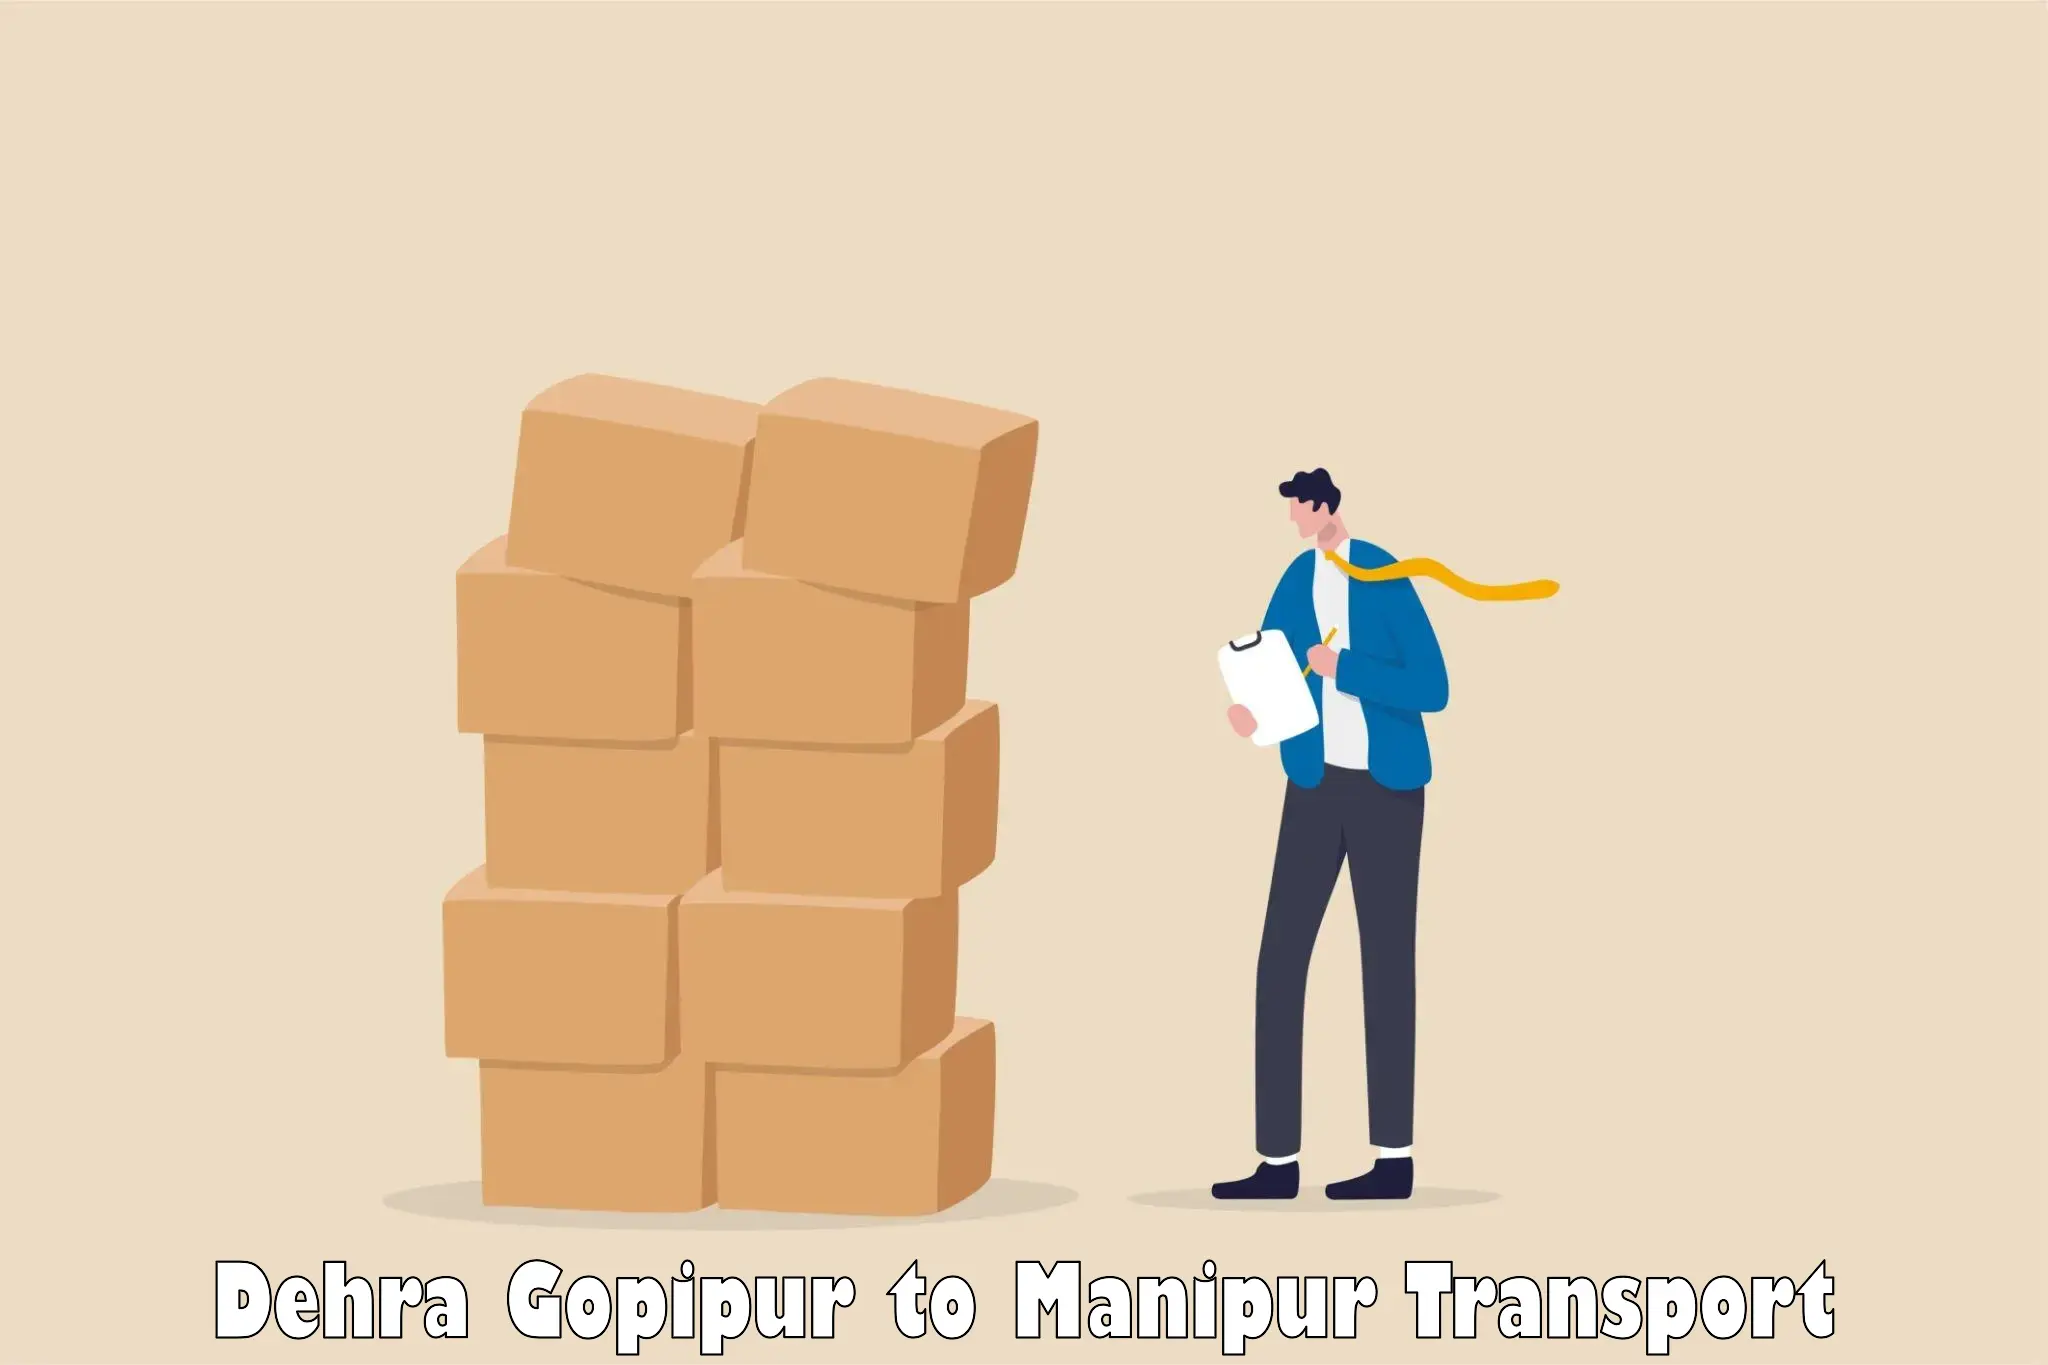 Daily transport service Dehra Gopipur to Churachandpur